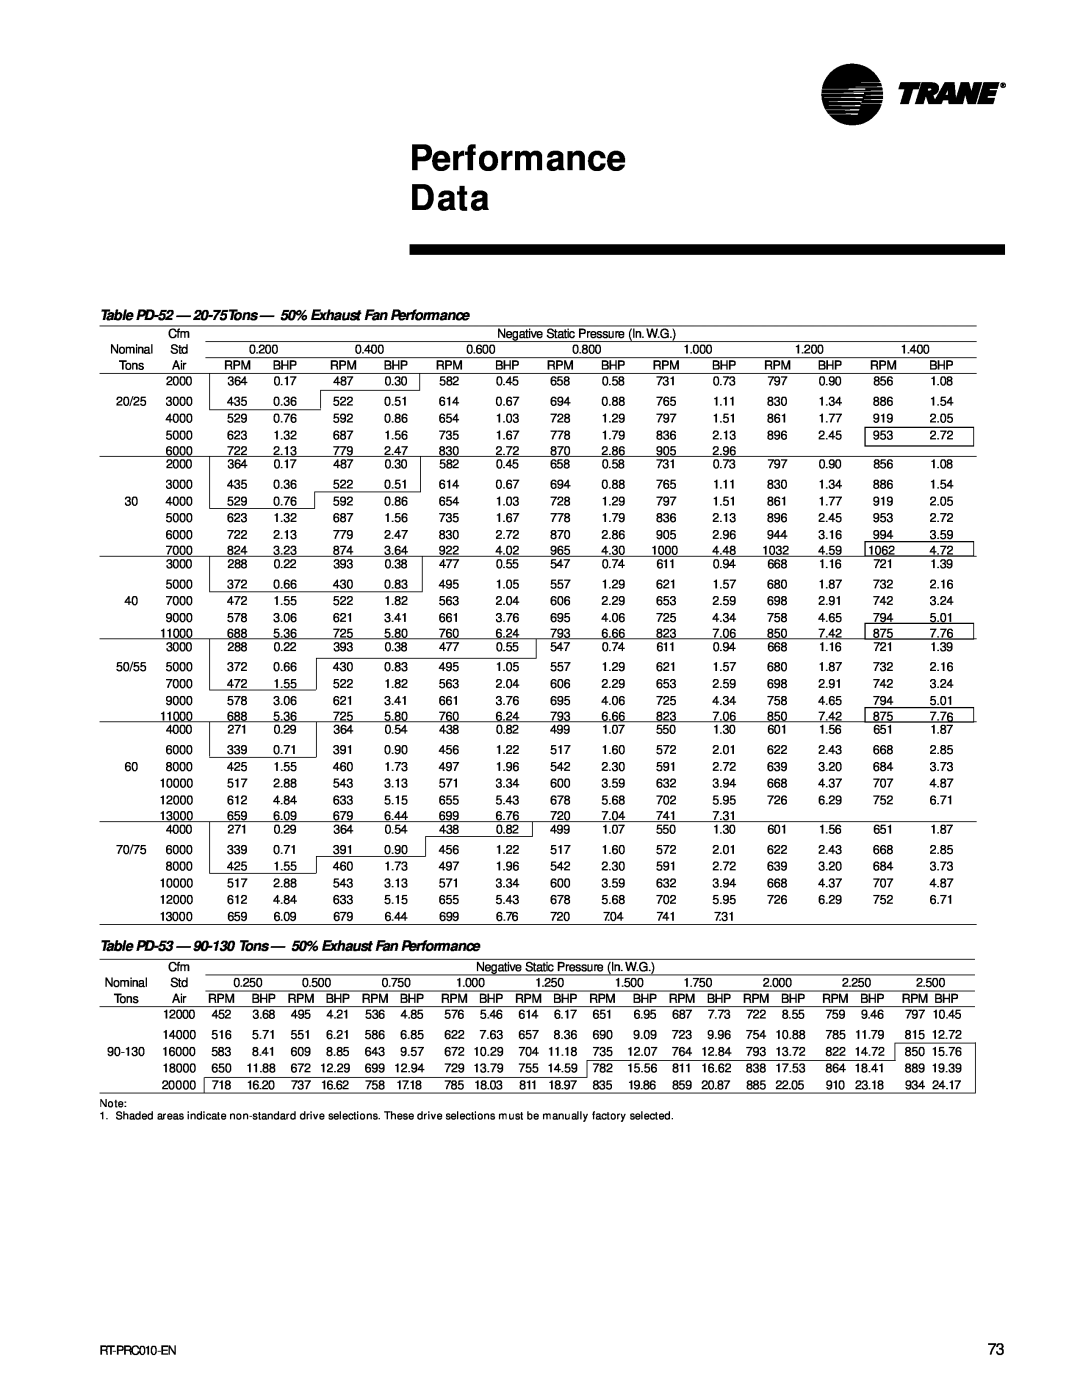 Trane RT-PRC010-EN manual Performance Data, 13000 